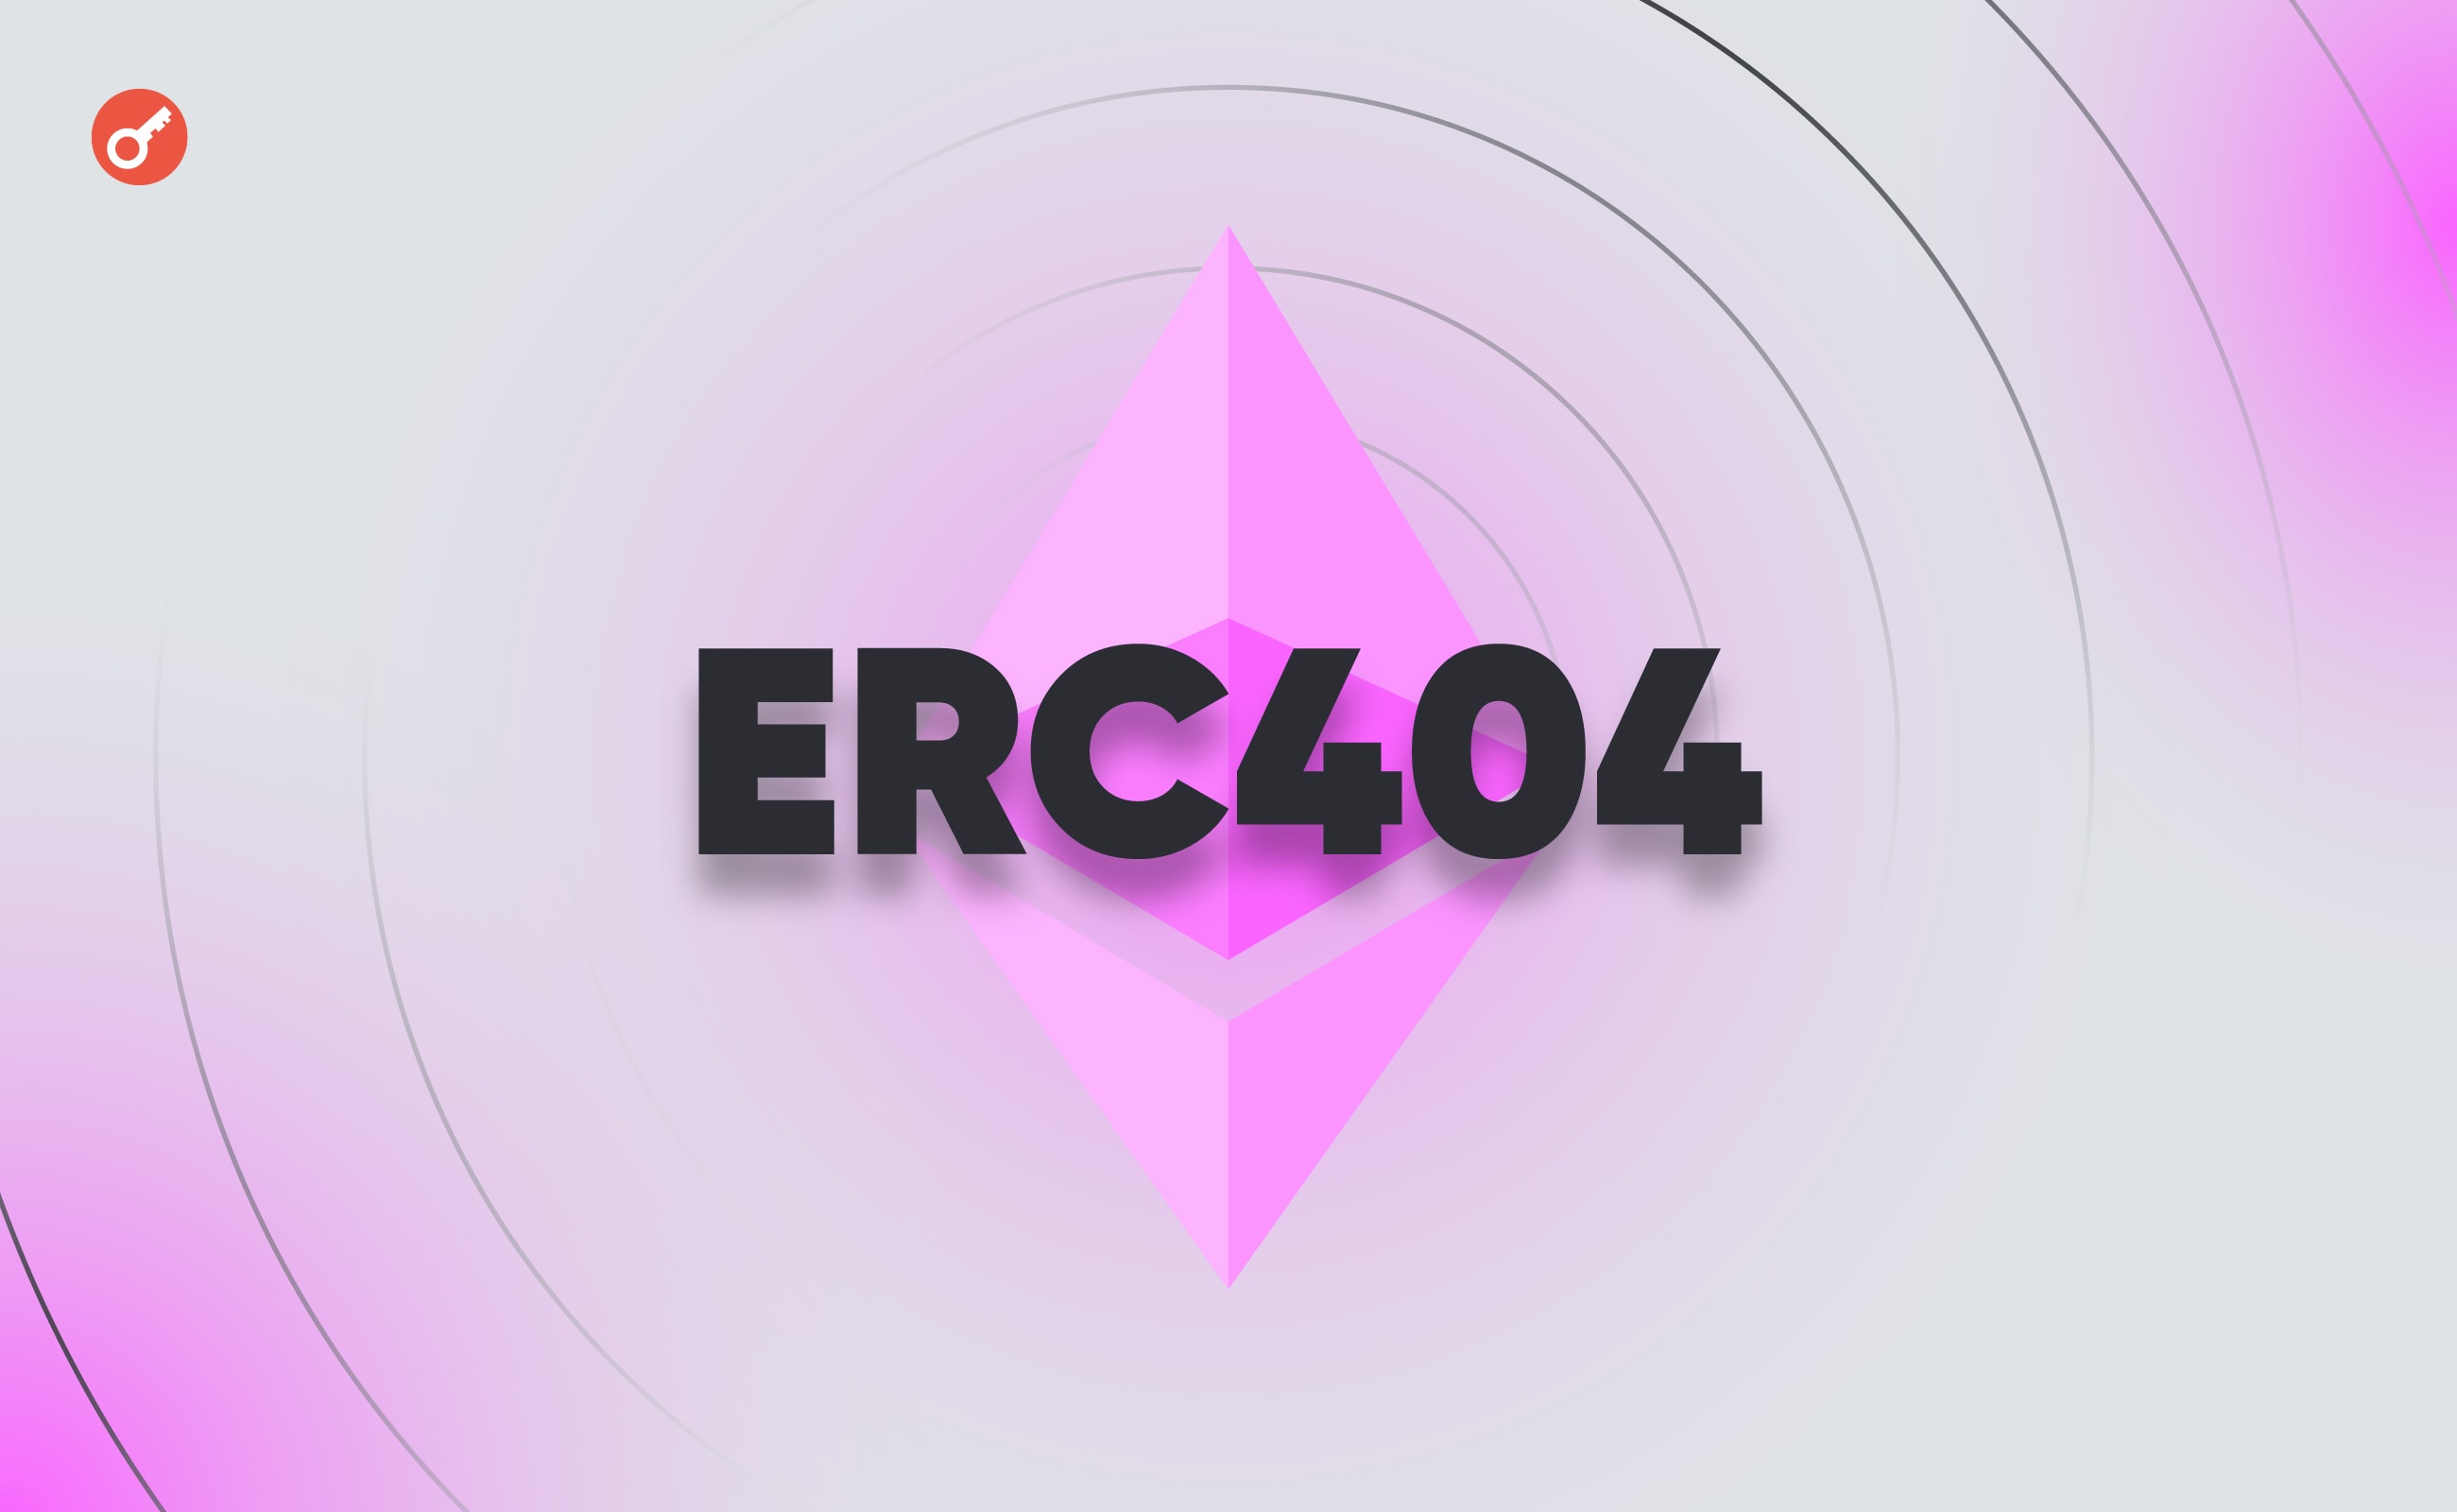 ERC-404: rewolucyjny standard tokenów czy “automat dla degenów”? Główny kolaż wiadomości.